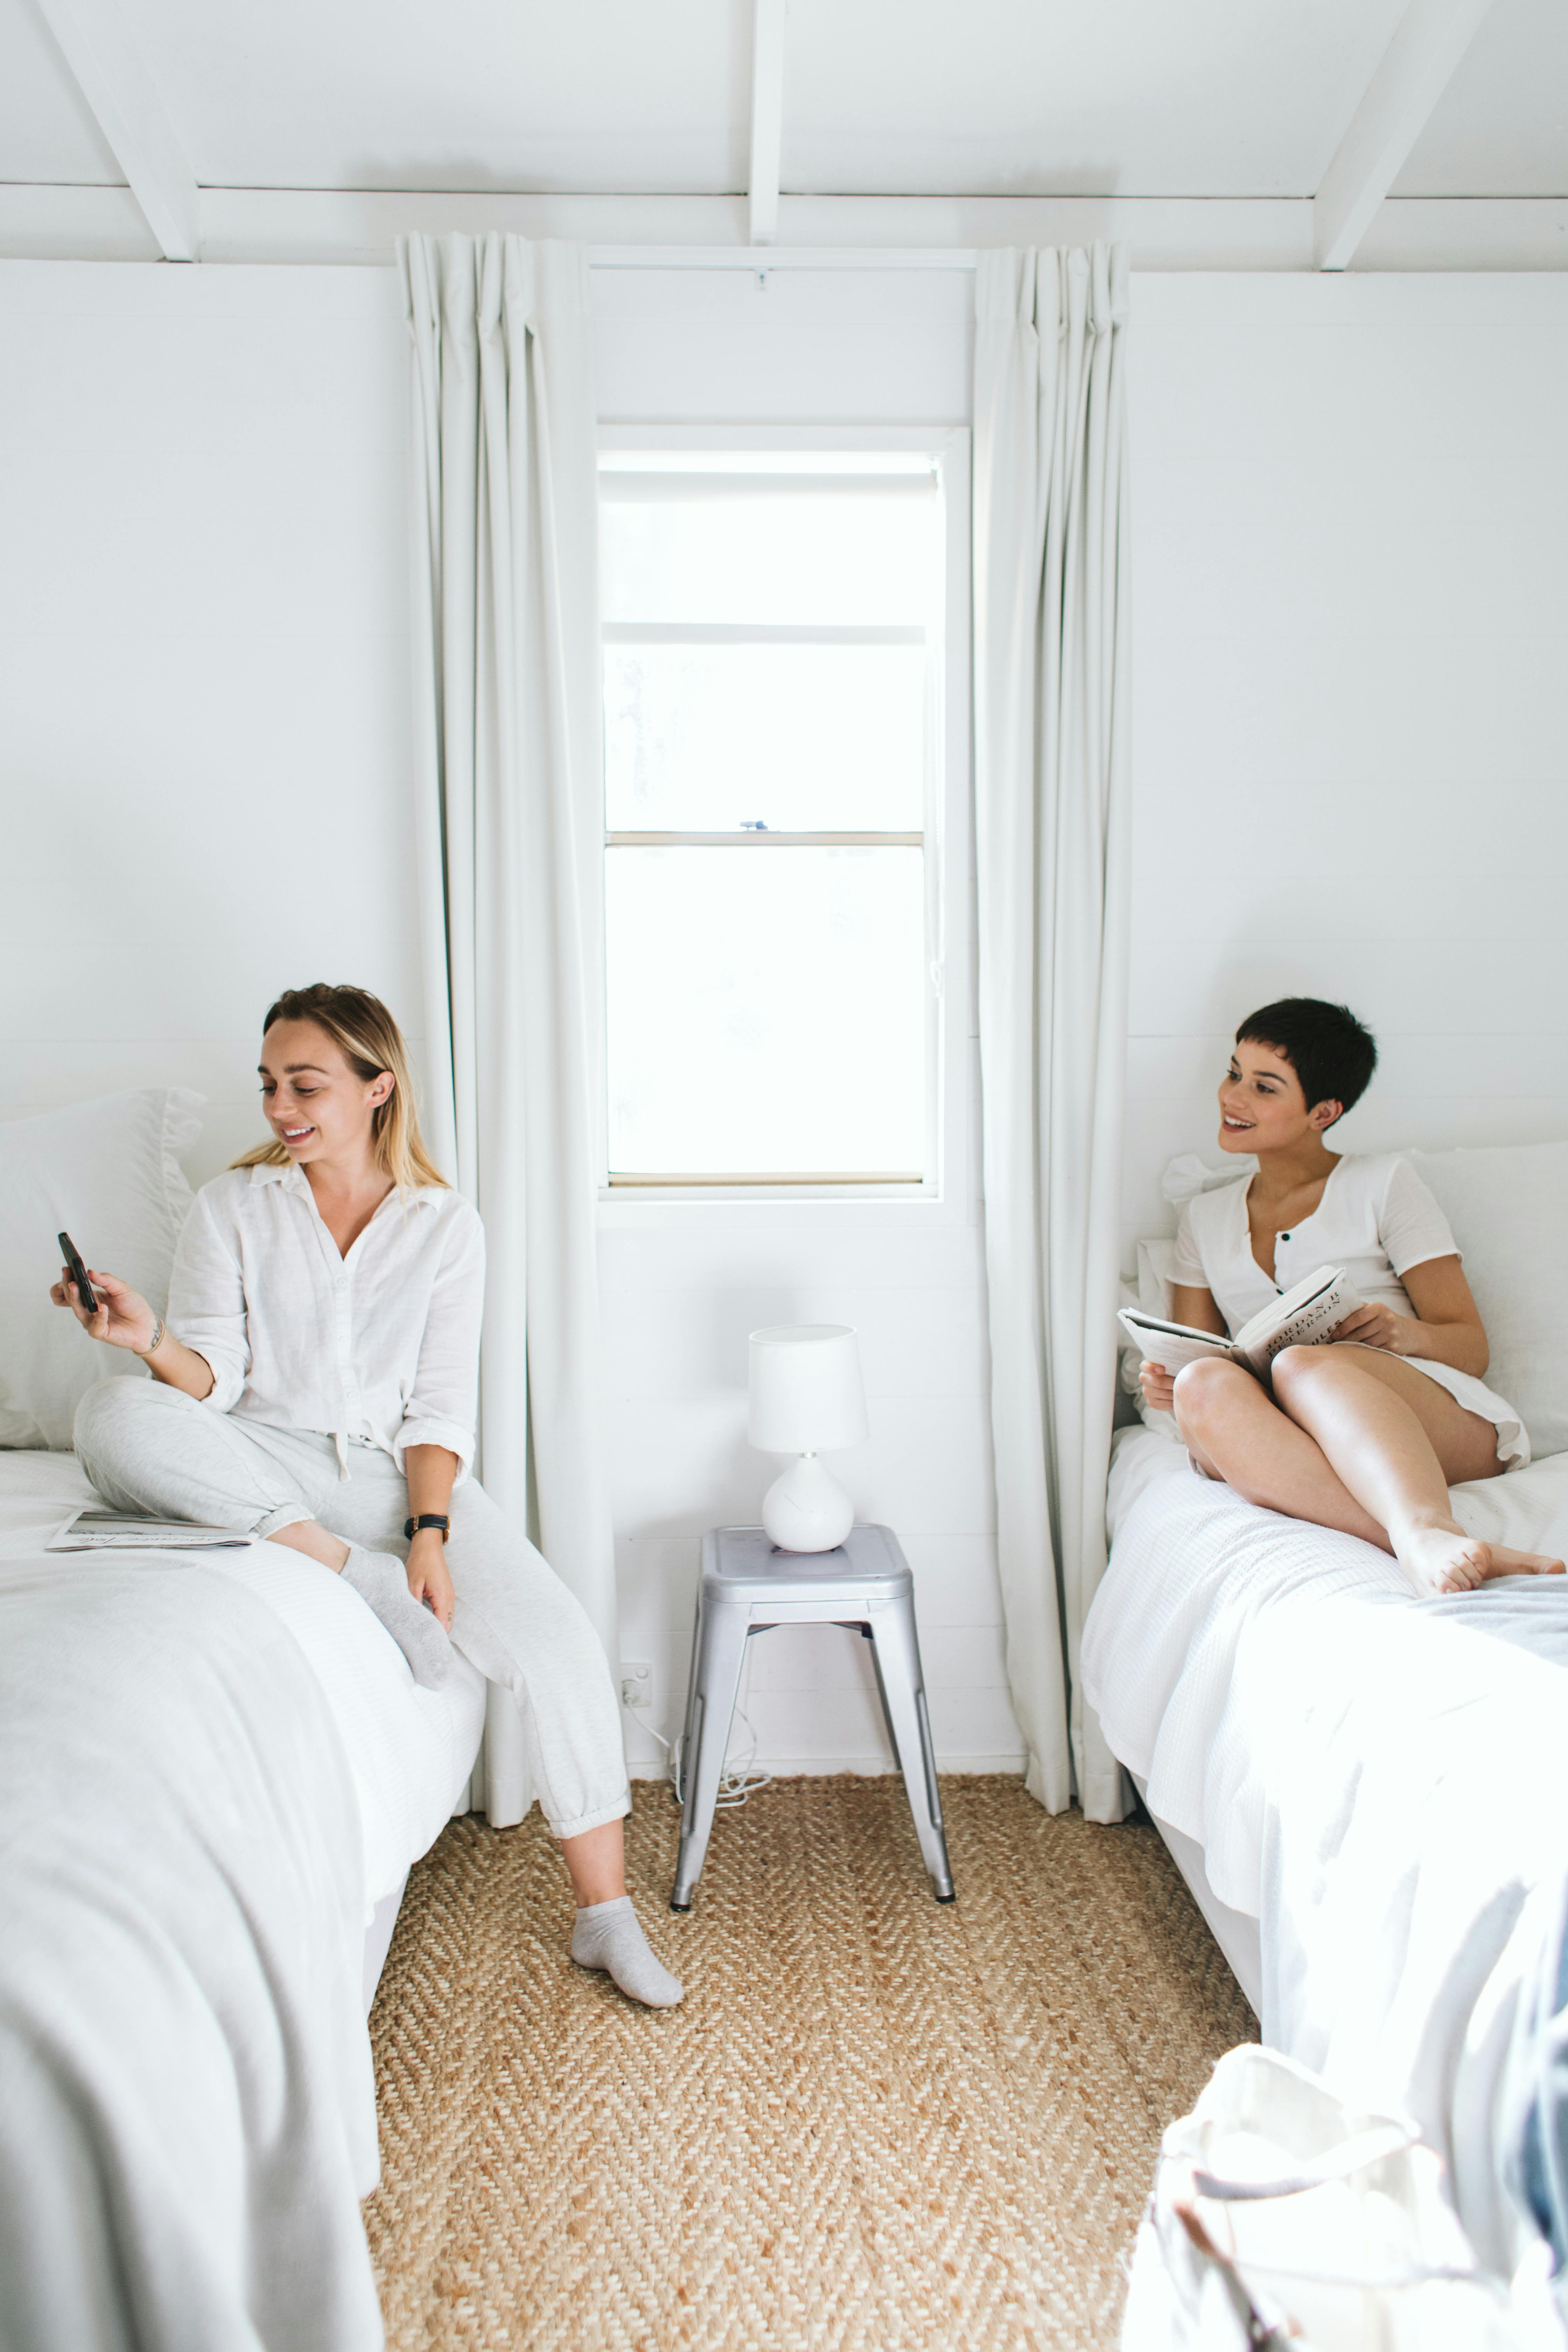 Zwei Frauen sitzen auf einzelnen Betten | Quelle: Pexels